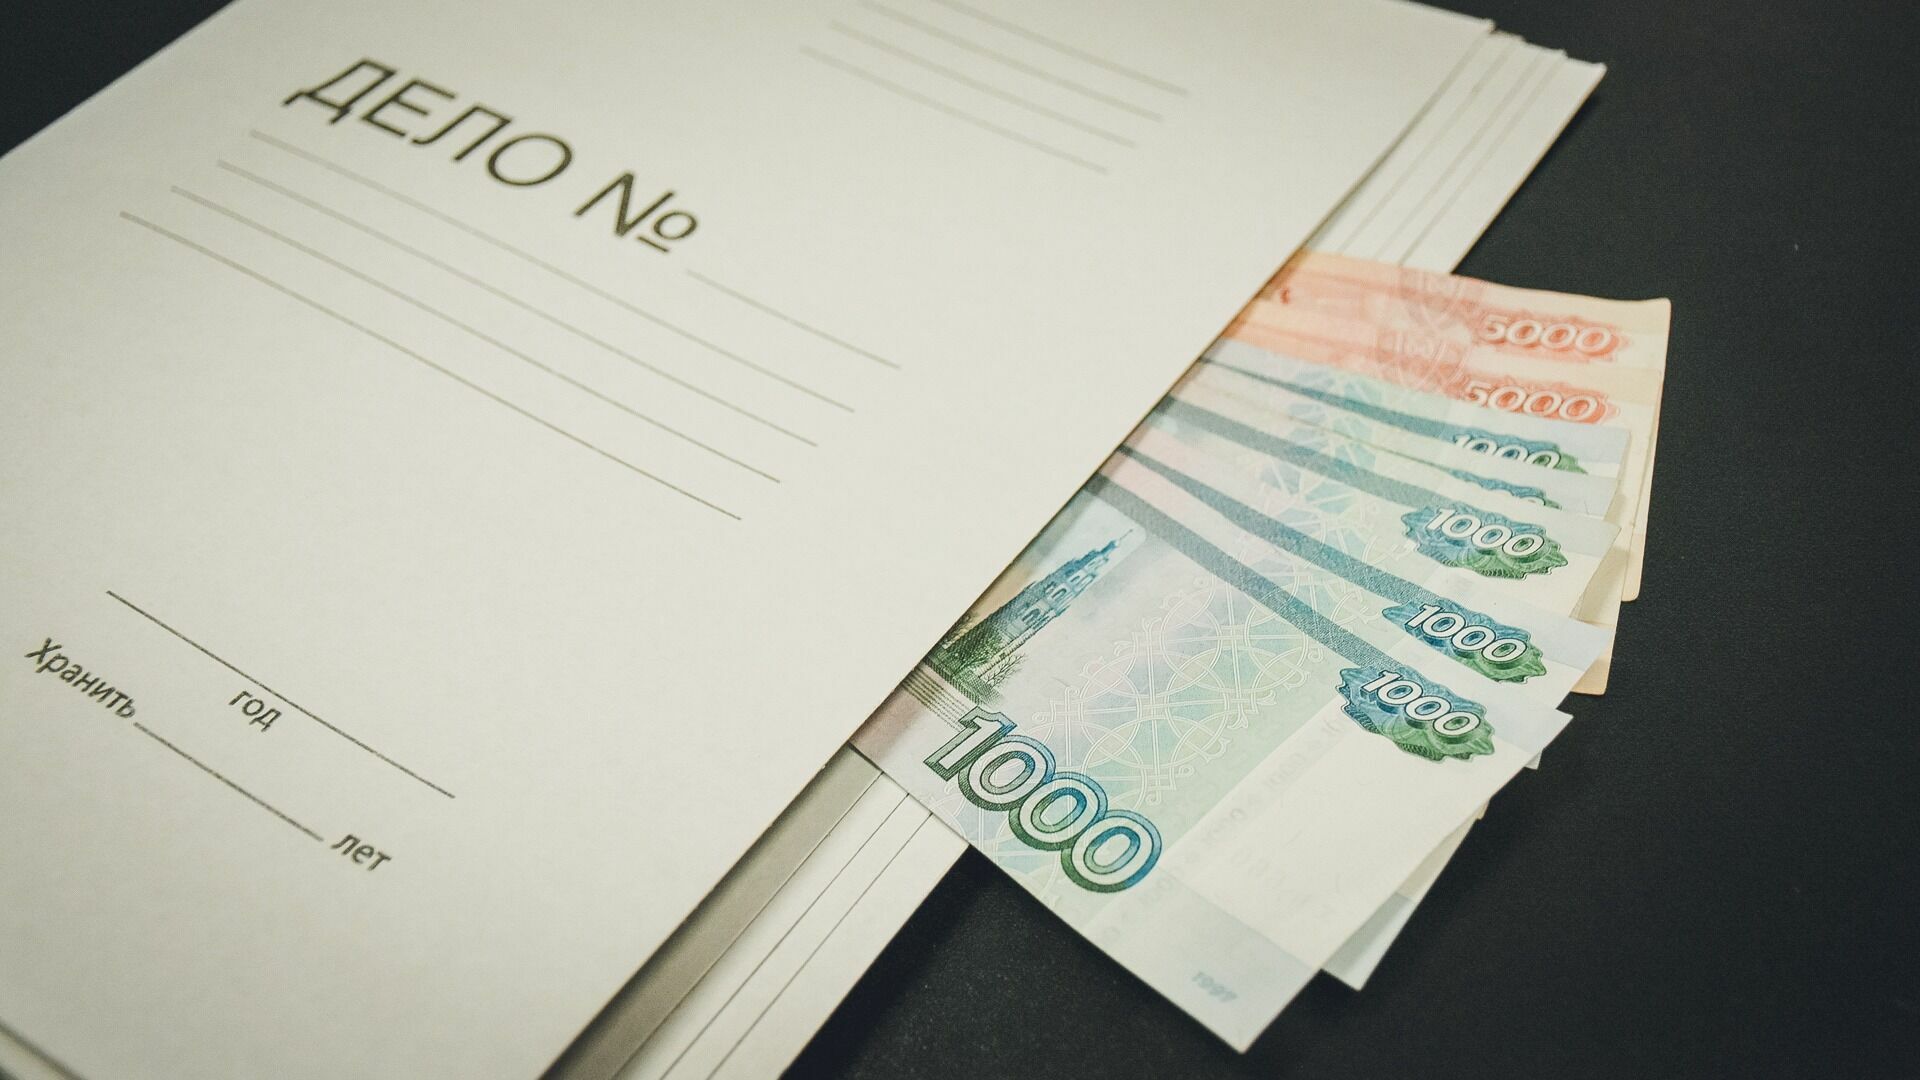 Жительница Тугулыма заплатила 62 тысячи рублей за подбор вакансий